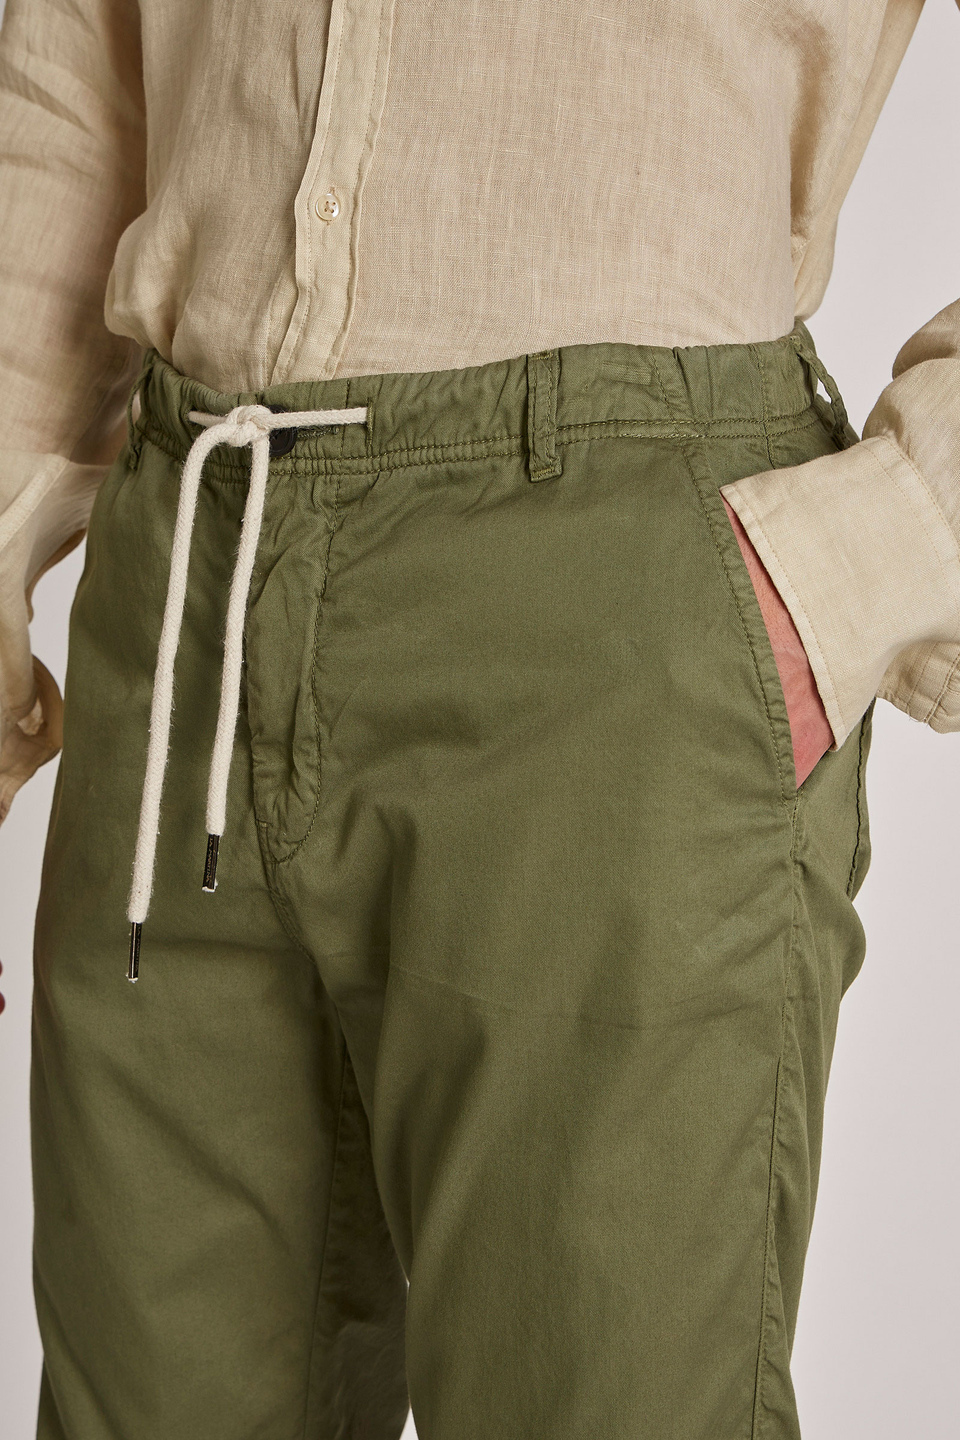 Men's regular-fit 100% cotton trousers - La Martina - Official Online Shop